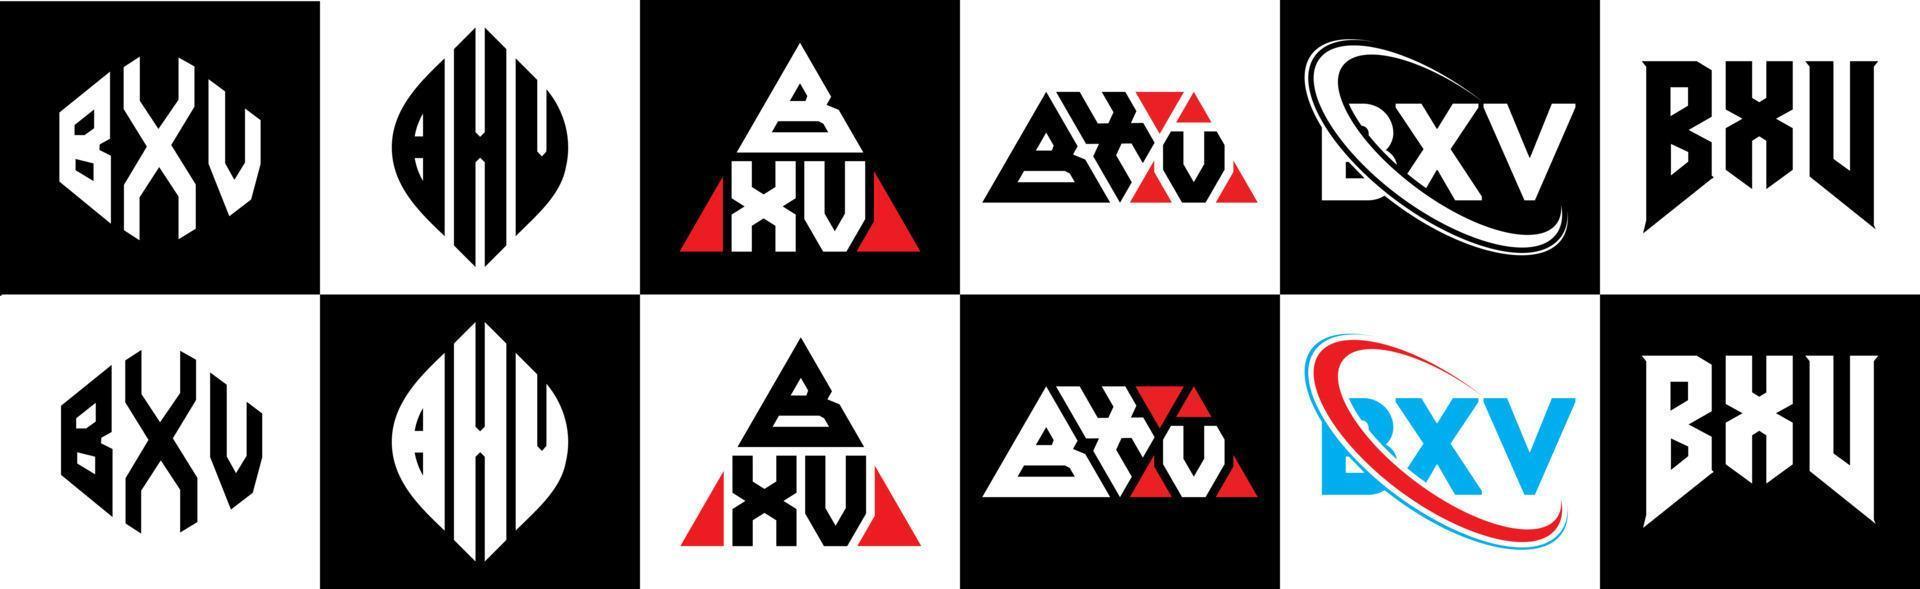 bxv-Buchstaben-Logo-Design in sechs Stilen. bxv Polygon, Kreis, Dreieck, Sechseck, flacher und einfacher Stil mit schwarz-weißem Buchstabenlogo in einer Zeichenfläche. bxv minimalistisches und klassisches Logo vektor